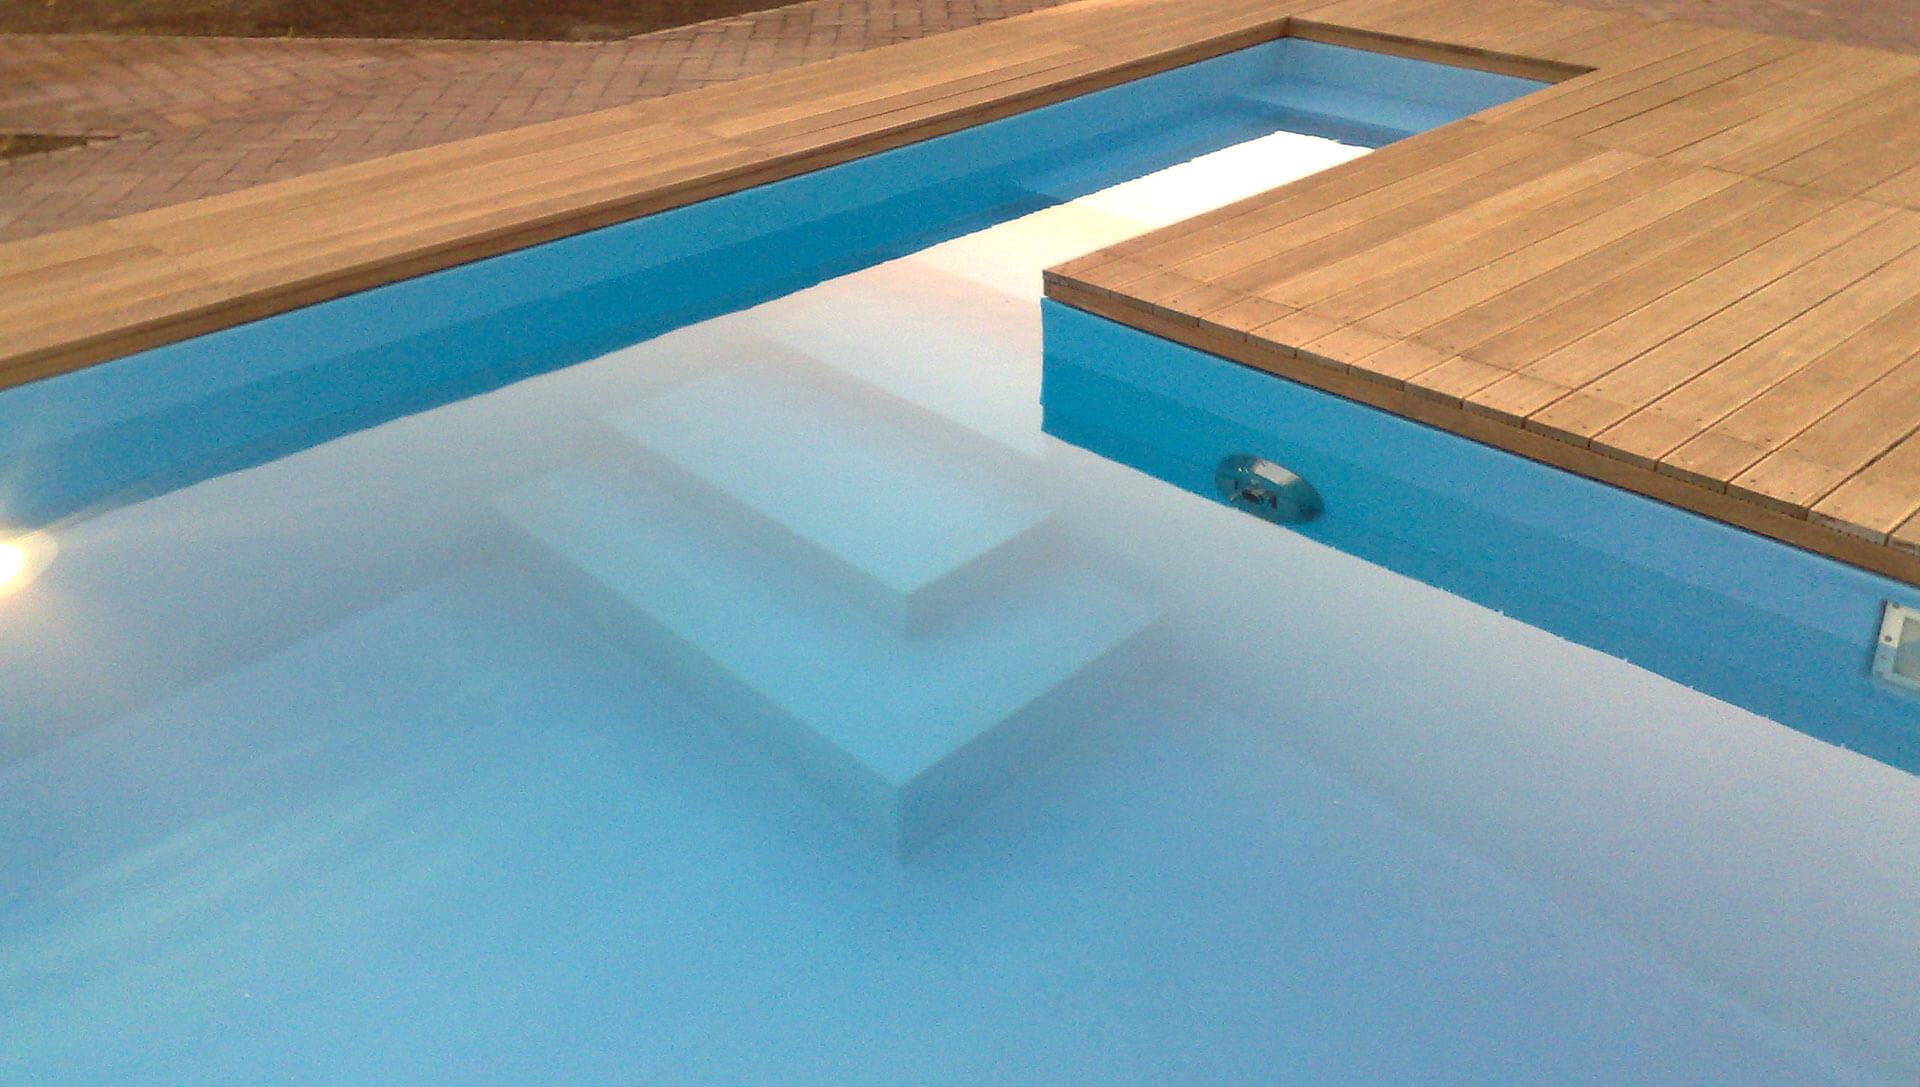 Správne umiestnený a kvalitne vyhotovený bazén je najkrajšou perlou záhrady